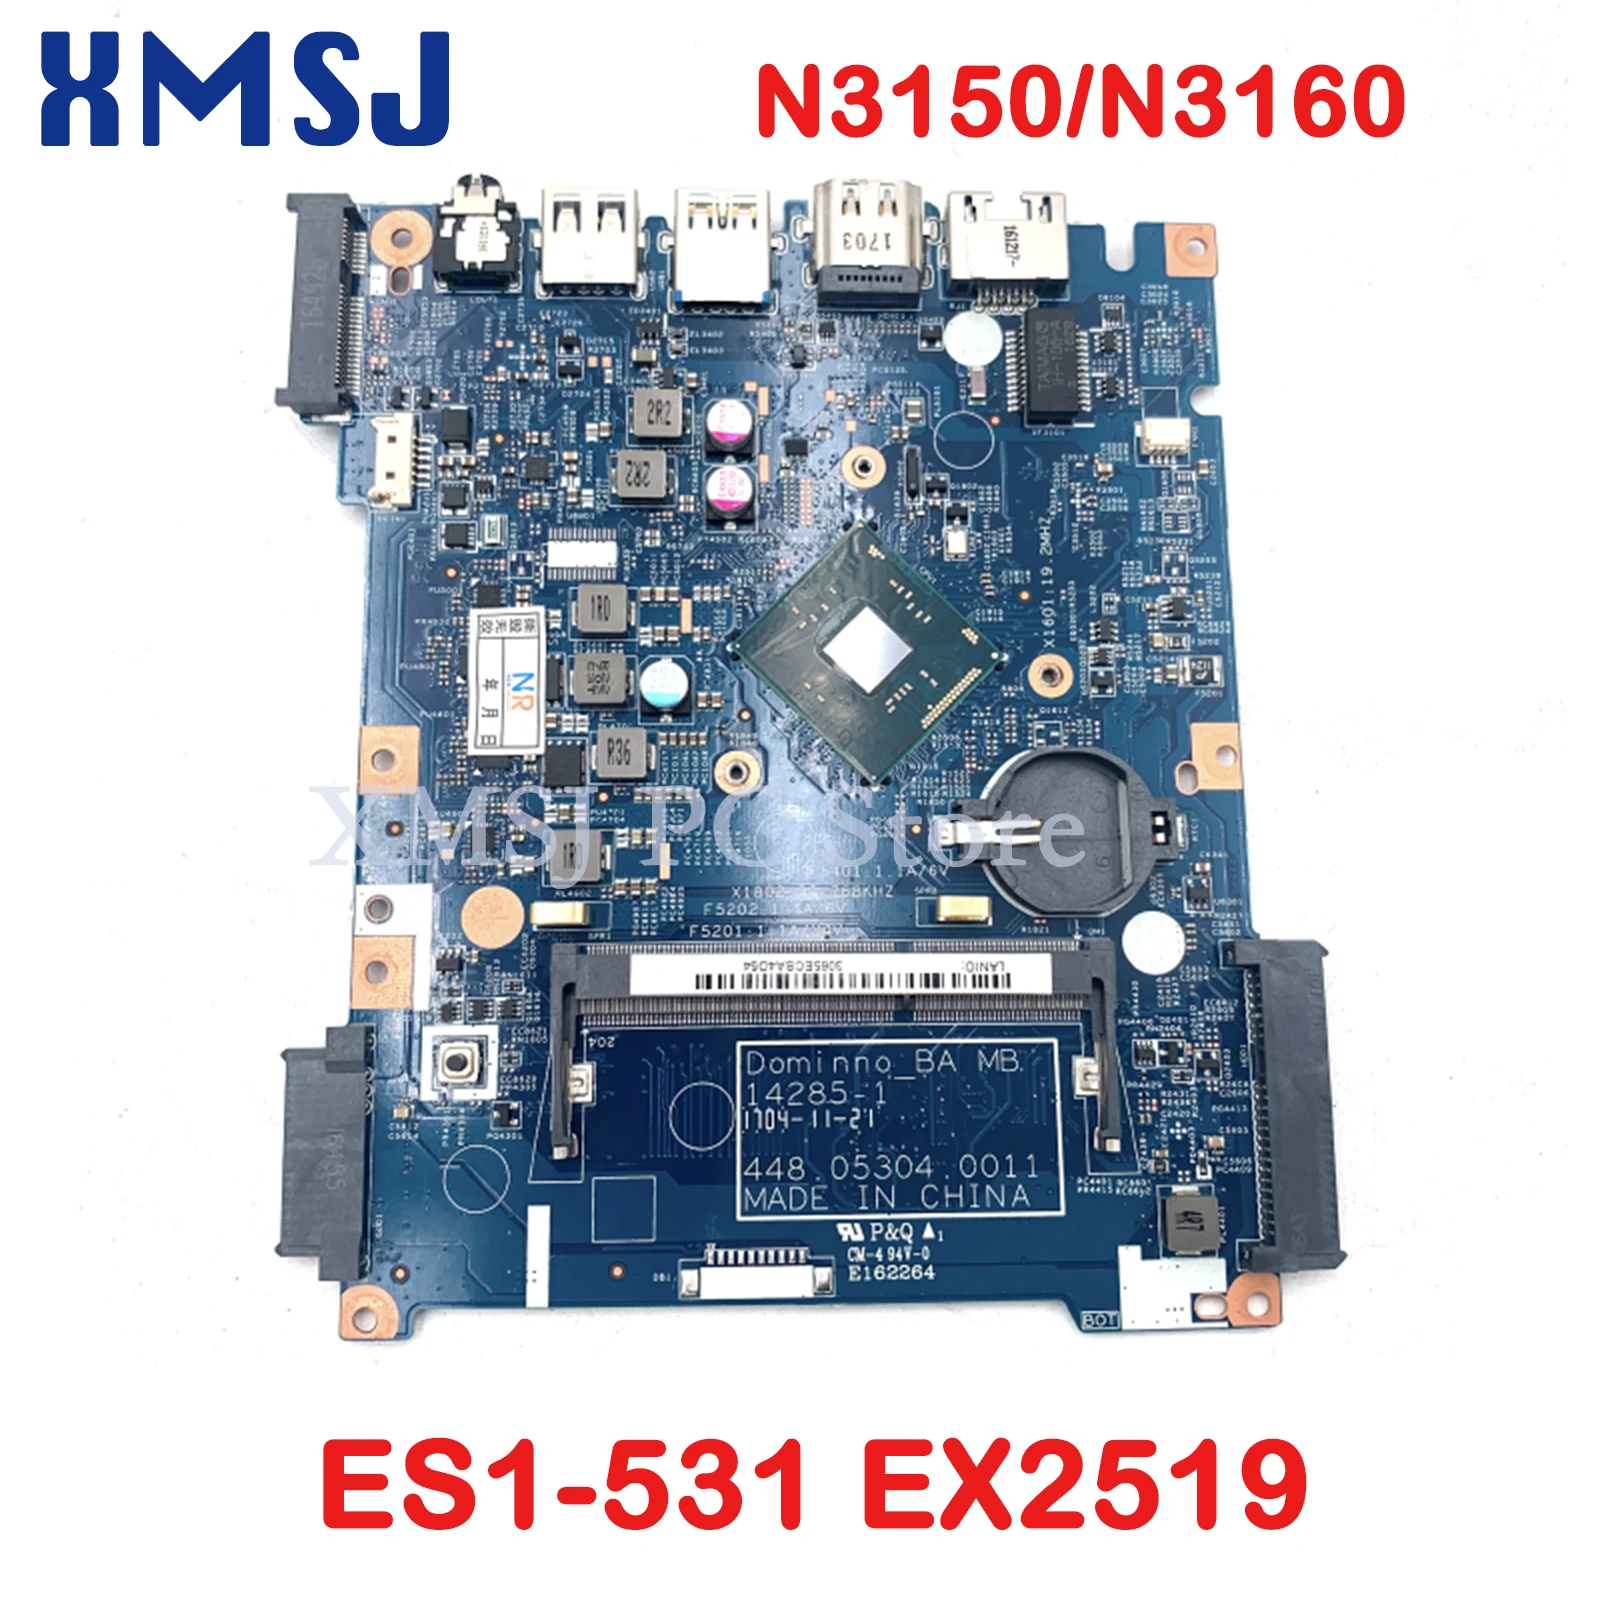 

XMSJ For Acer Aspire ES1-531 EX2519 Motherboard 14285-1 448.05302.0011 448.05303.0011 448.05304.0011 N3150/N3160 CPU